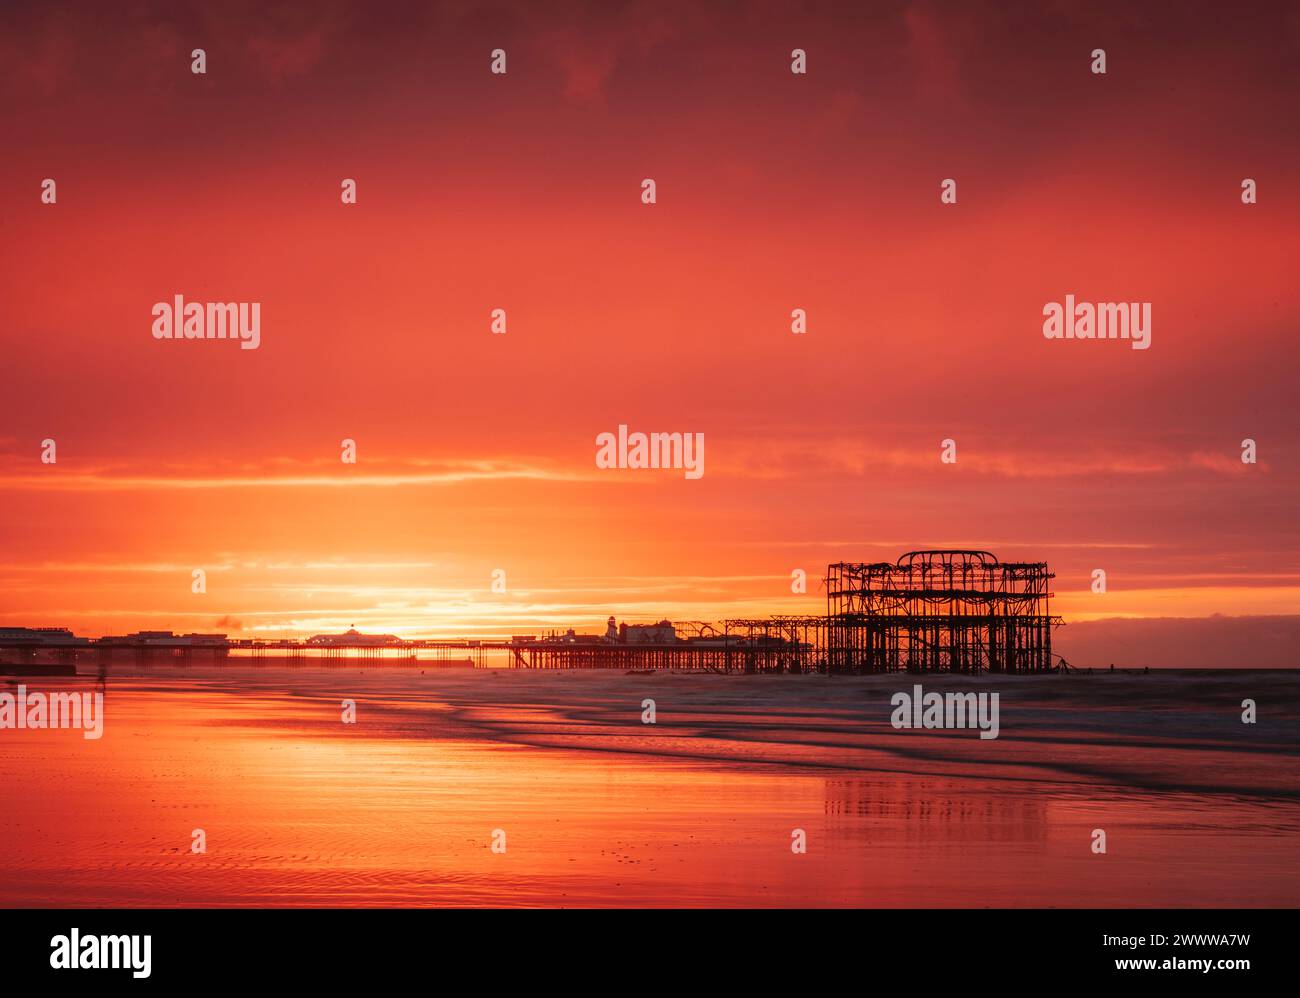 Brighton West Pier und Palace Pier während eines sehr lebhaften roten Sonnenaufgangs an der Ostküste von Sussex im Südosten Englands Großbritannien Stockfoto